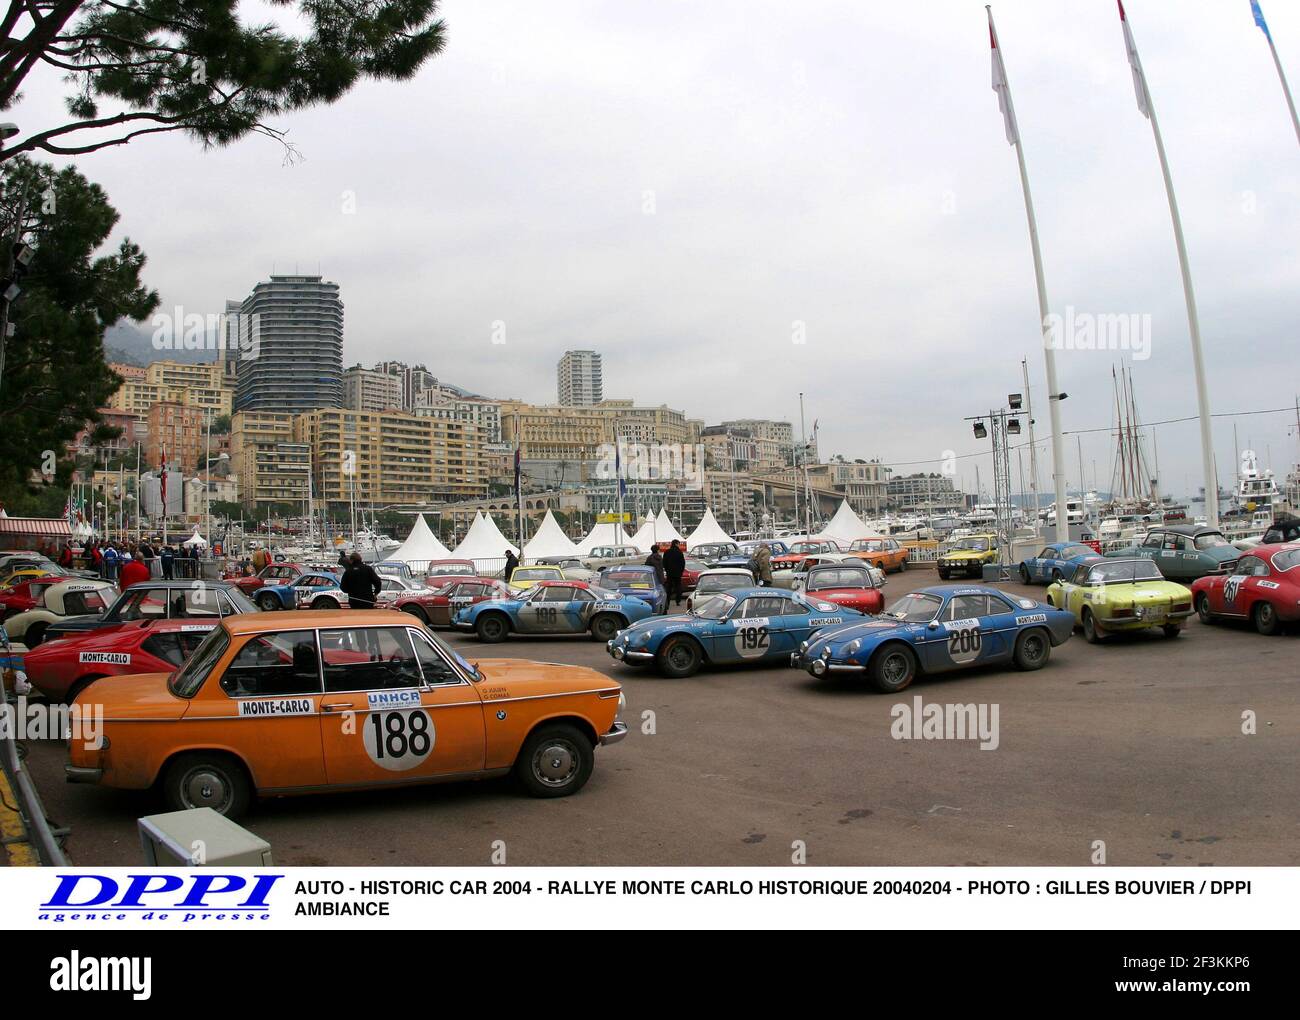 AUTO - HISTORIC CAR 2004 - RALLYE MONTE CARLO HISTORIQUE 20040204 - PHOTO : GILLES BOUVIER / DPPI AMBIANCE Stock Photo